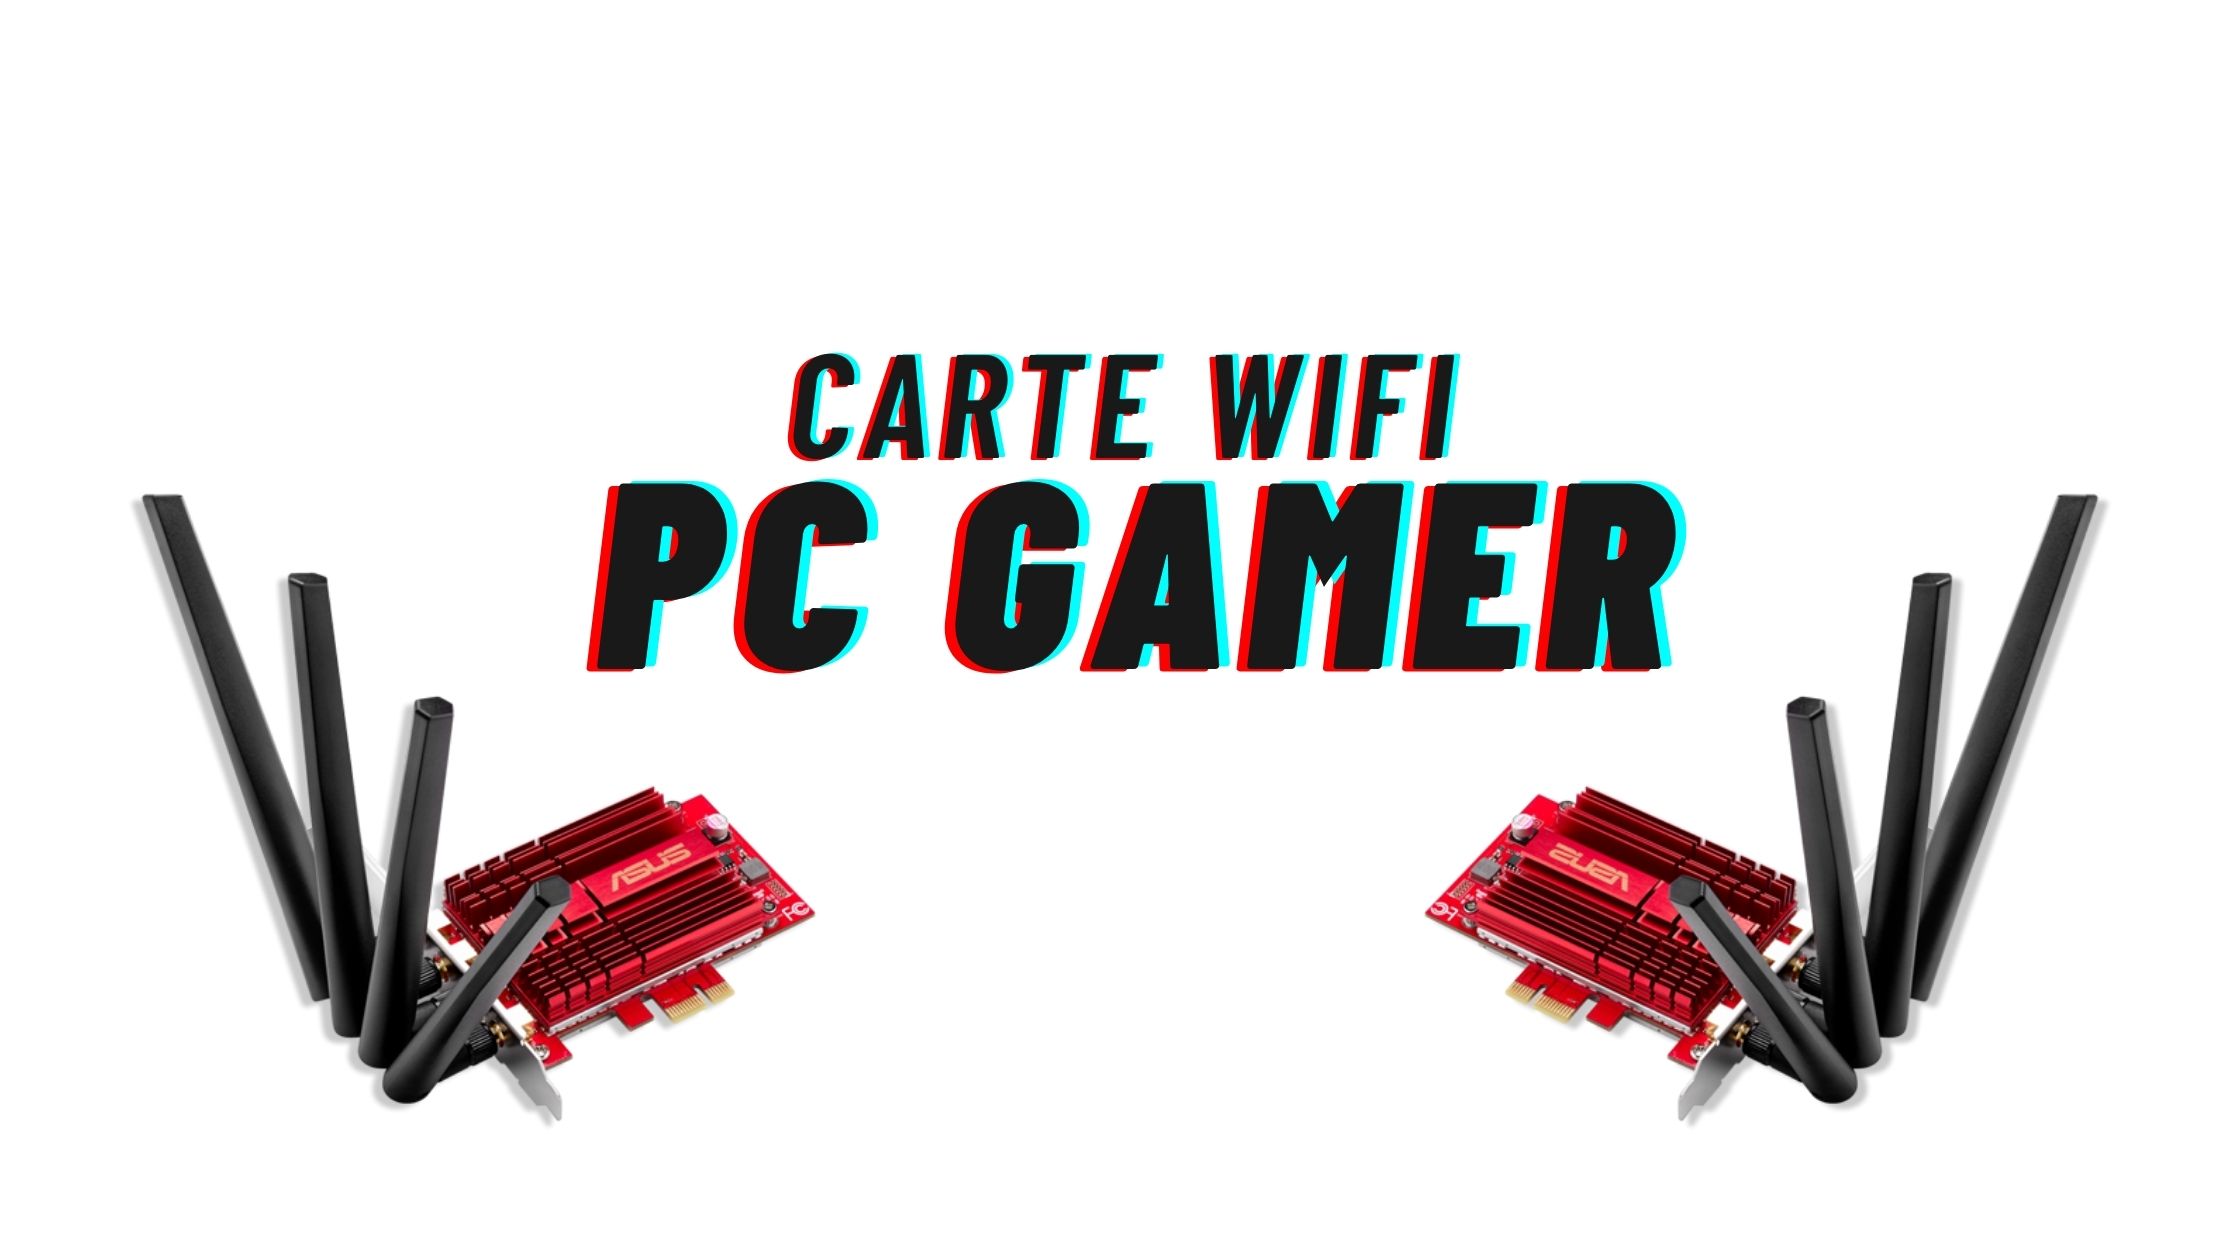 https://gazette-du-geek.fr/wp-content/uploads/2021/04/carte-wifi-pc-gamer.jpg